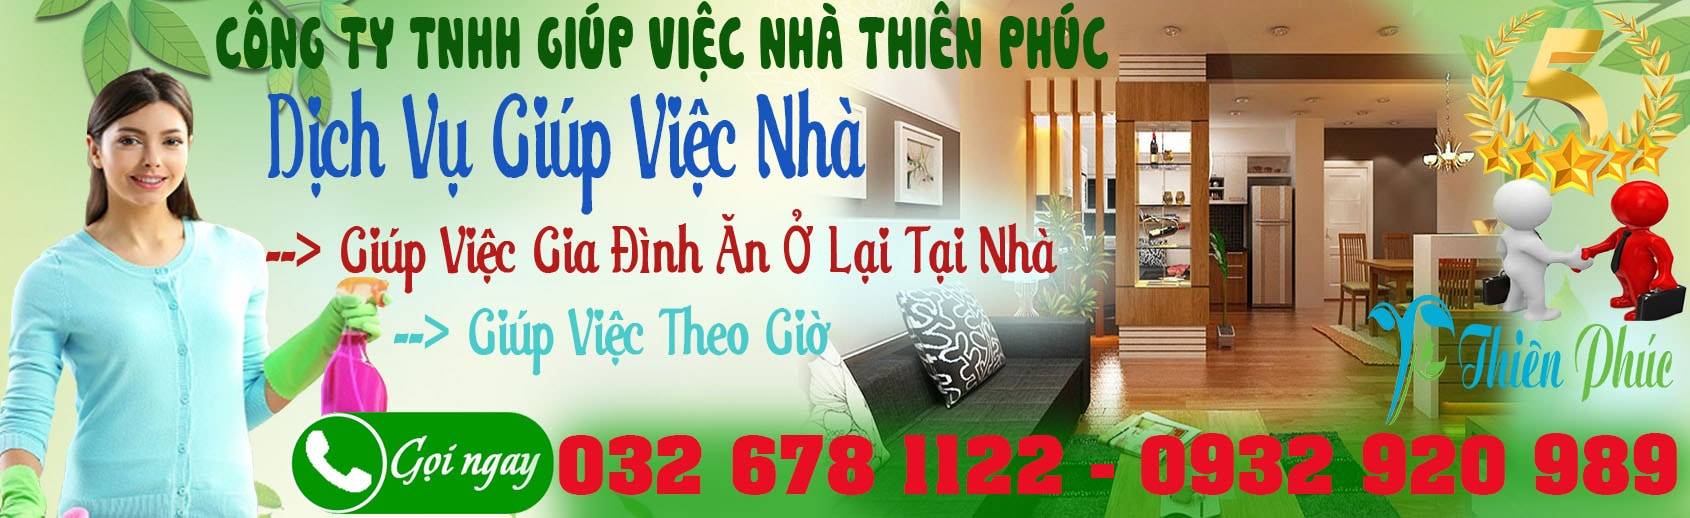 banner cong ty TNHH giup viec nha Thien Phuc